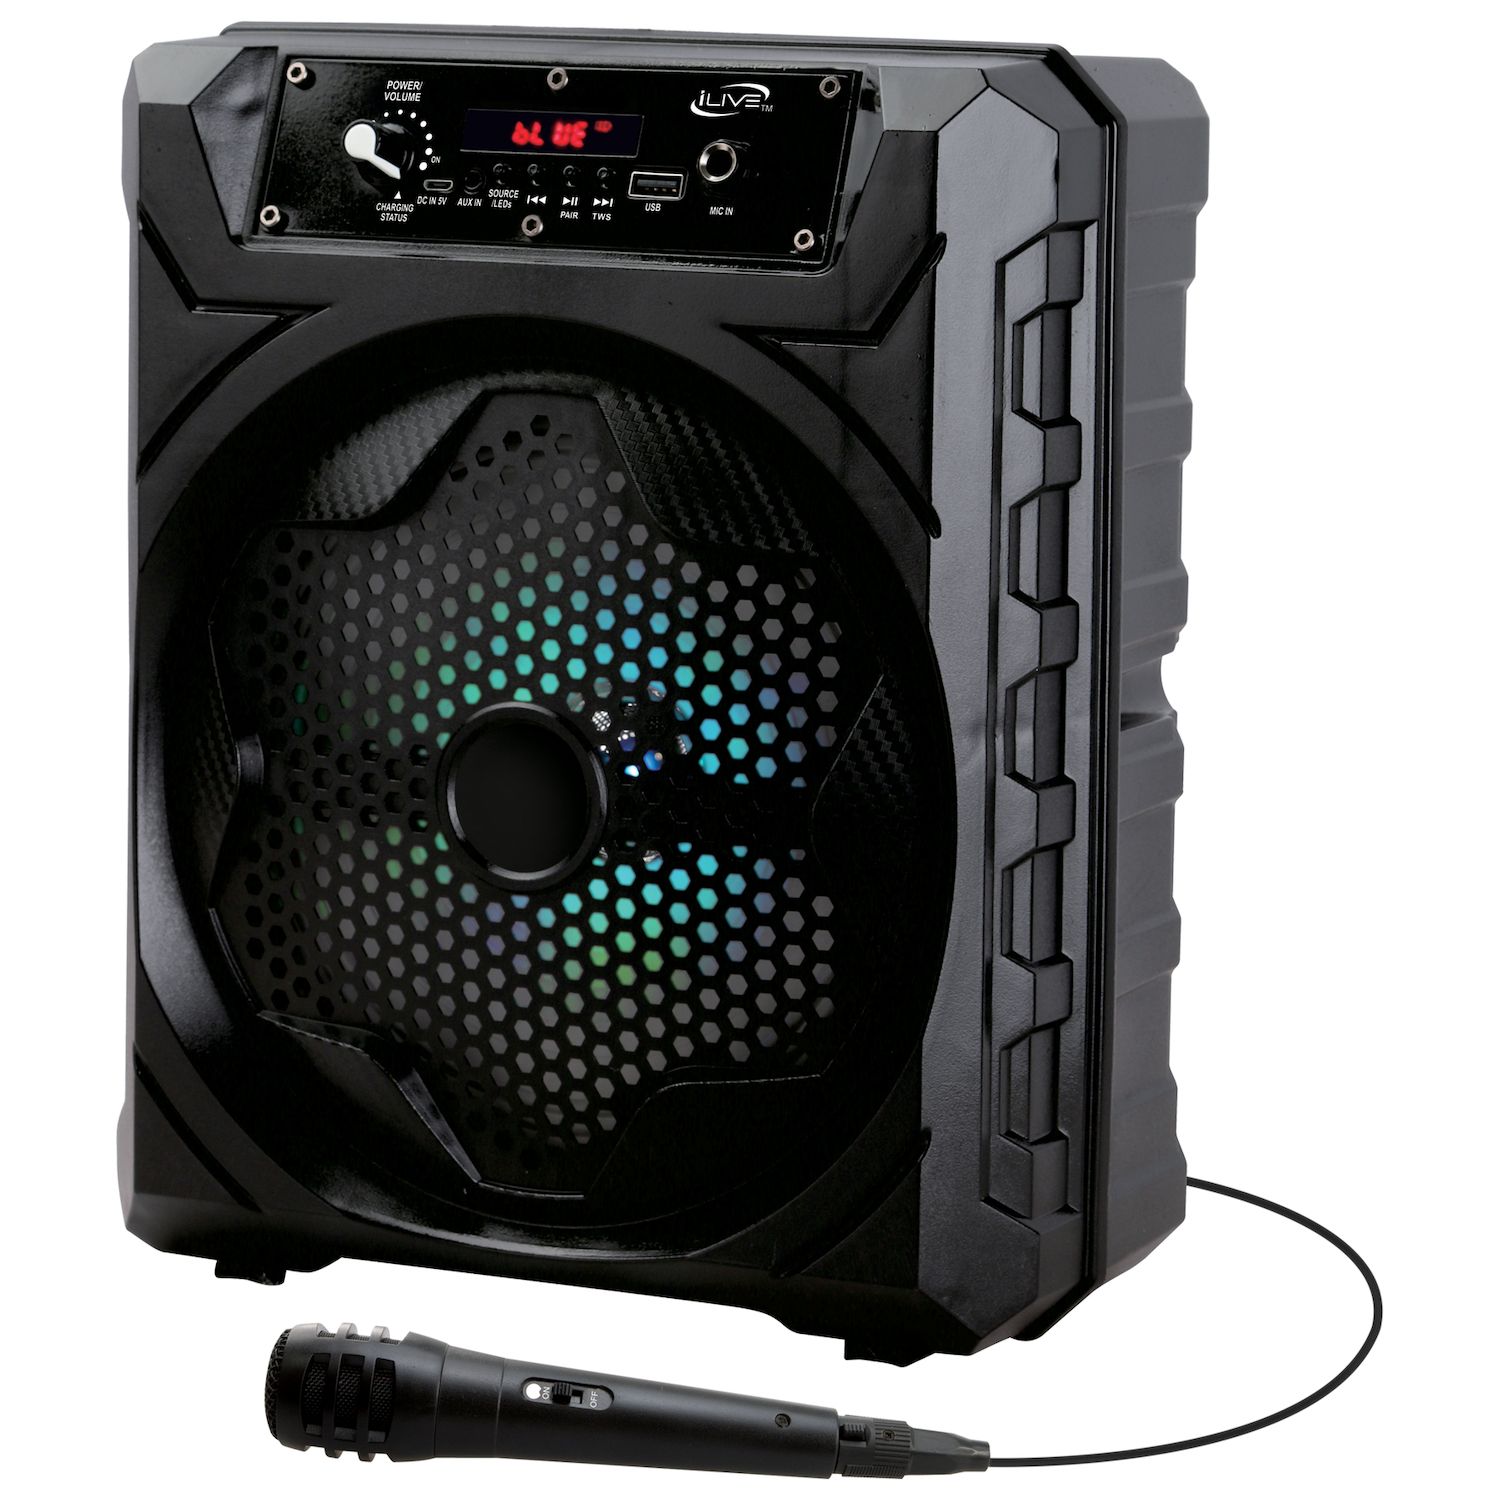 Karaoke USA Micrófono de karaoke profesional M175 (M175)